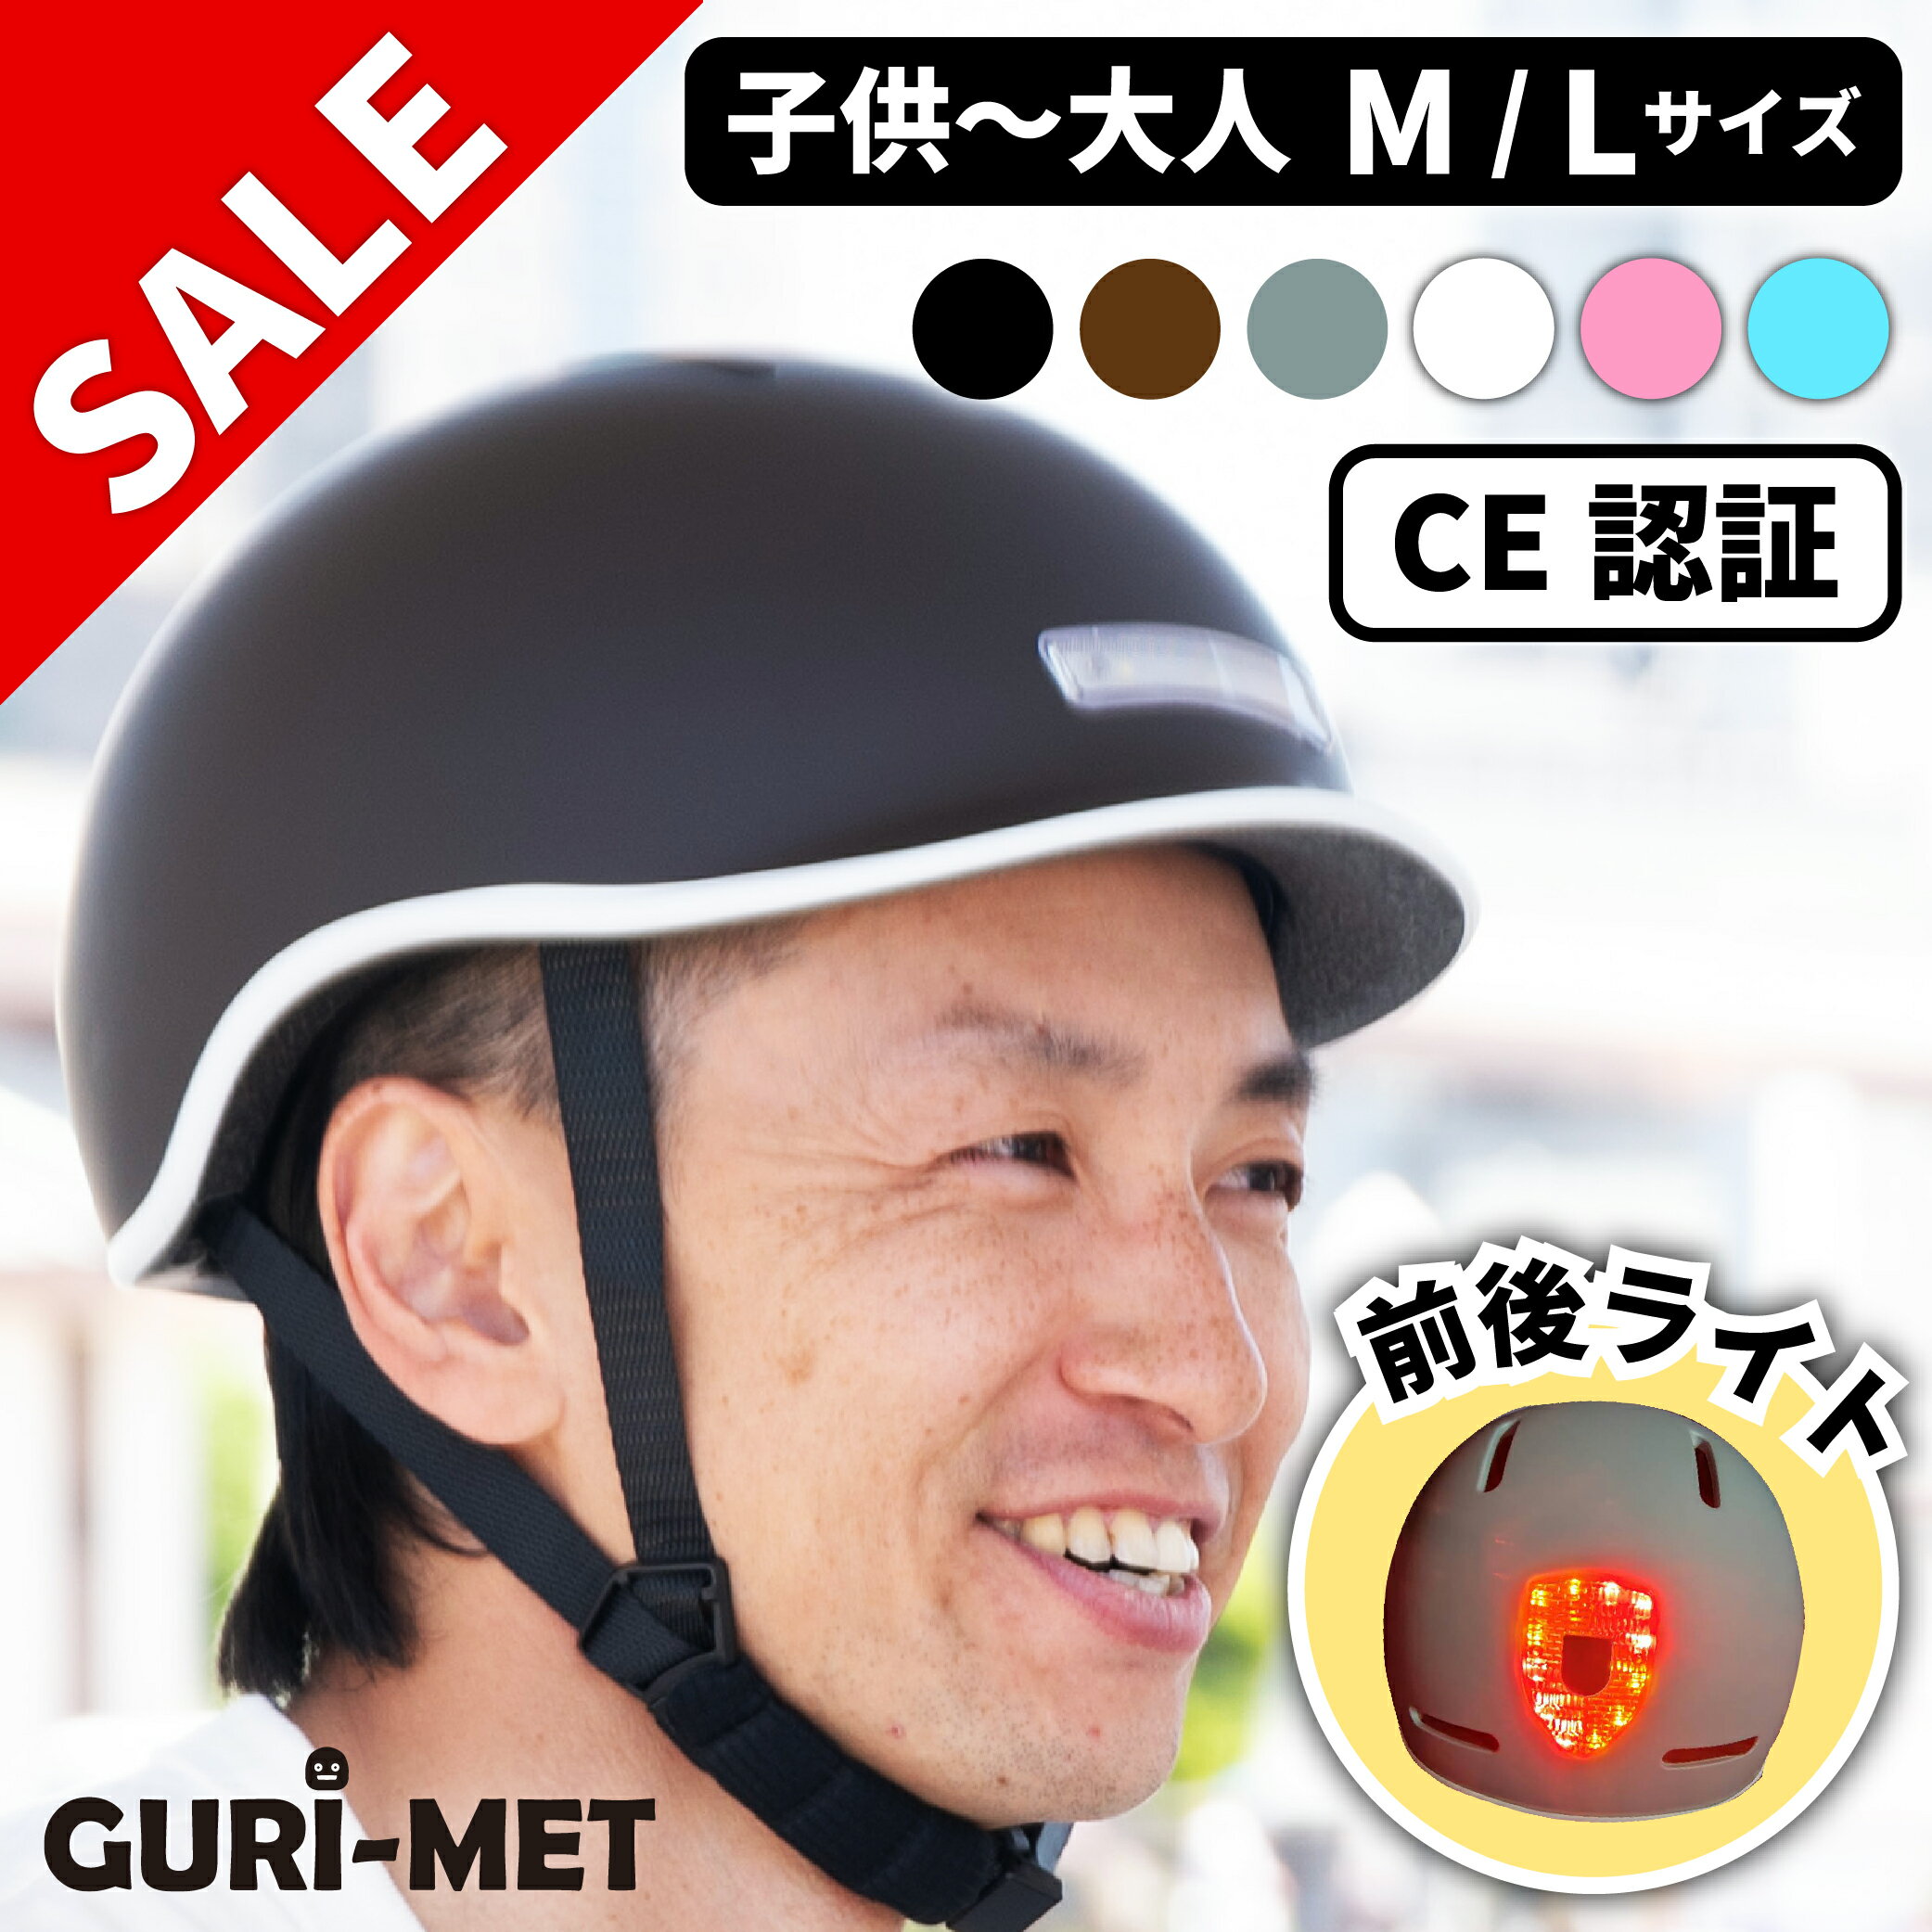 自転車ヘルメット 防災用にも ワンタッチ前後LEDライト付き サイズ調整可能 マグネットバックル GURI-MET グリメット 母の日 マザーズデー